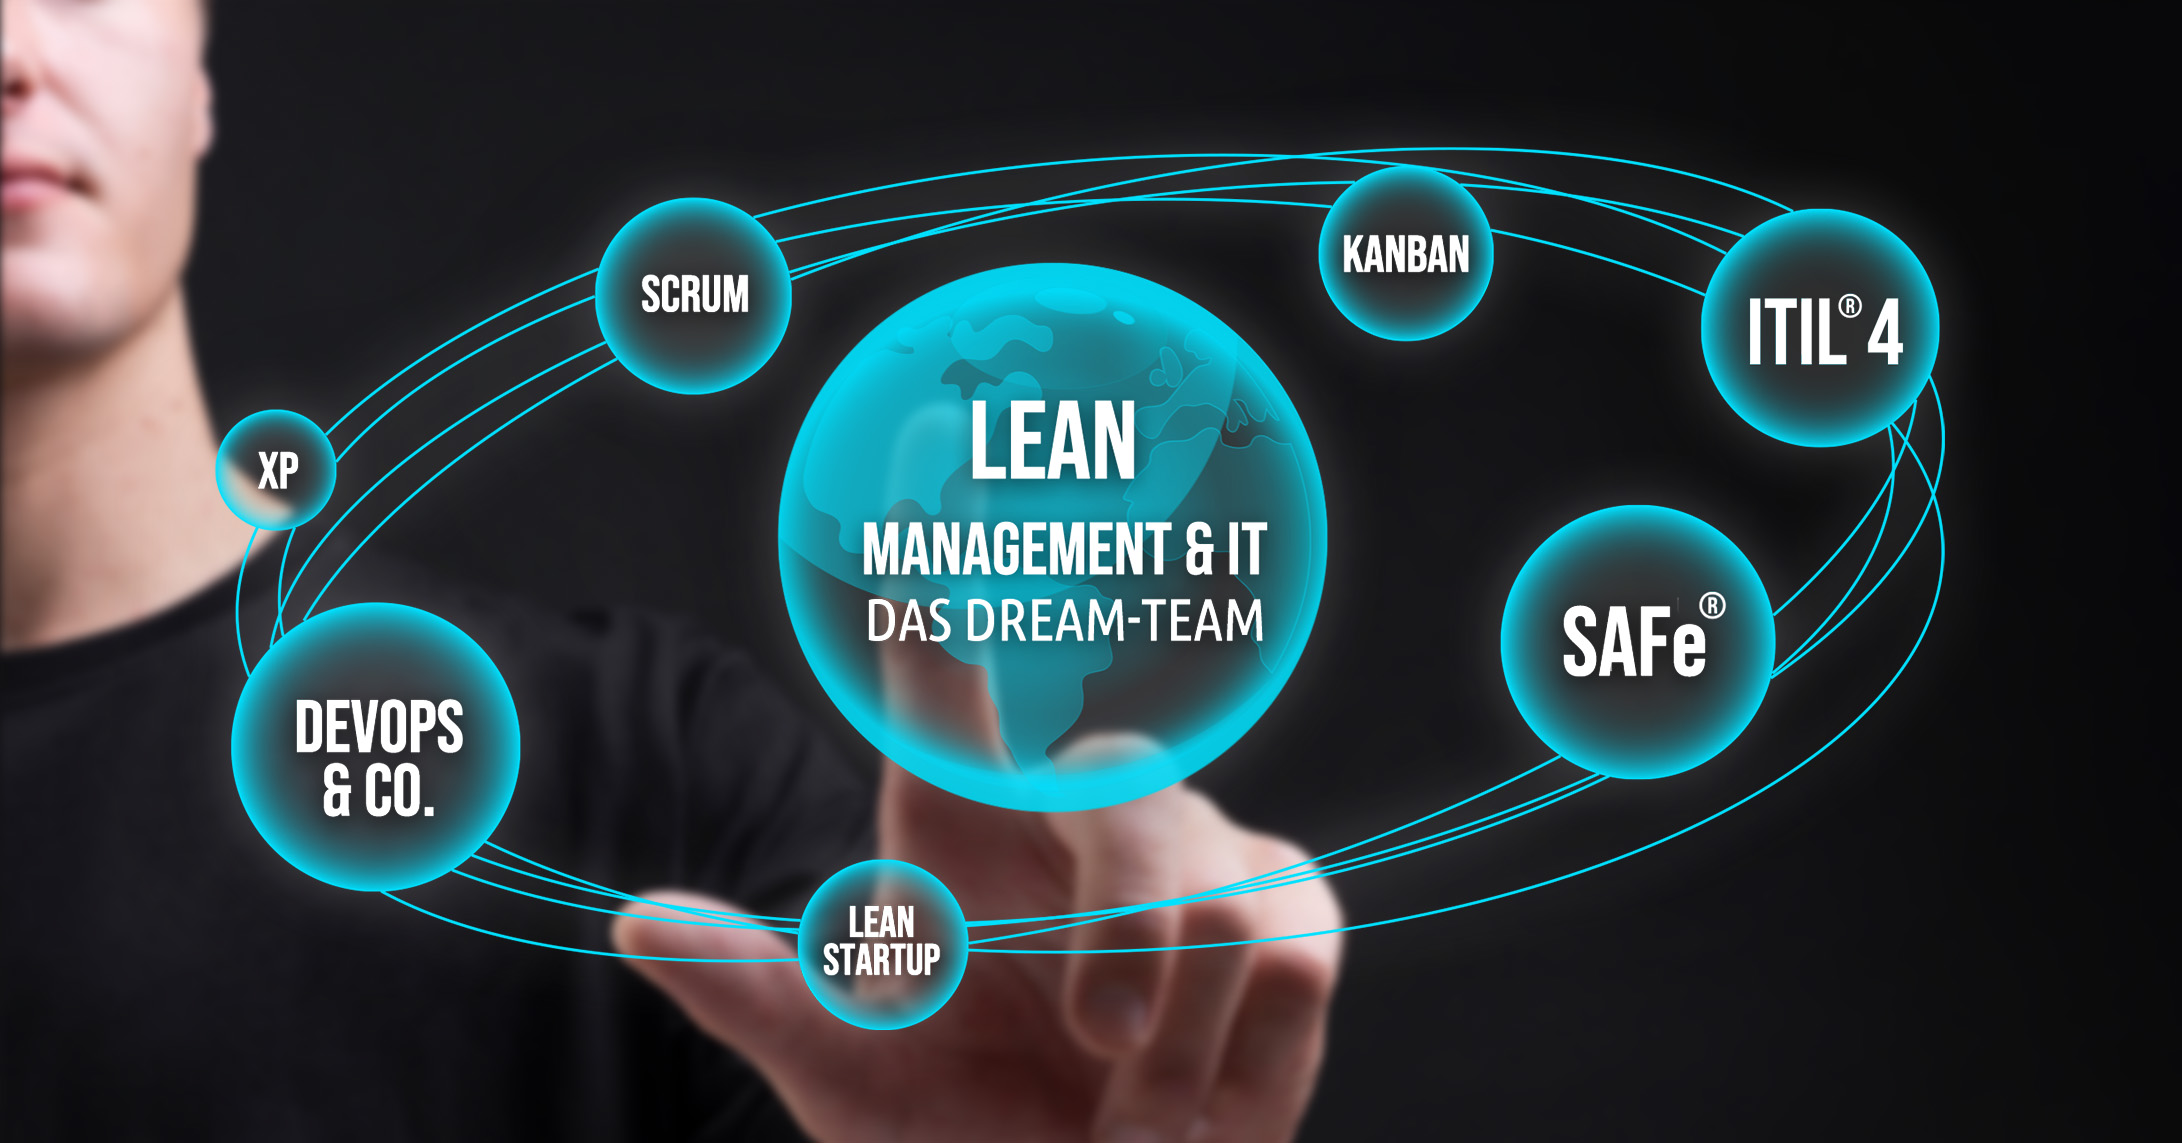 Lean Management & IT